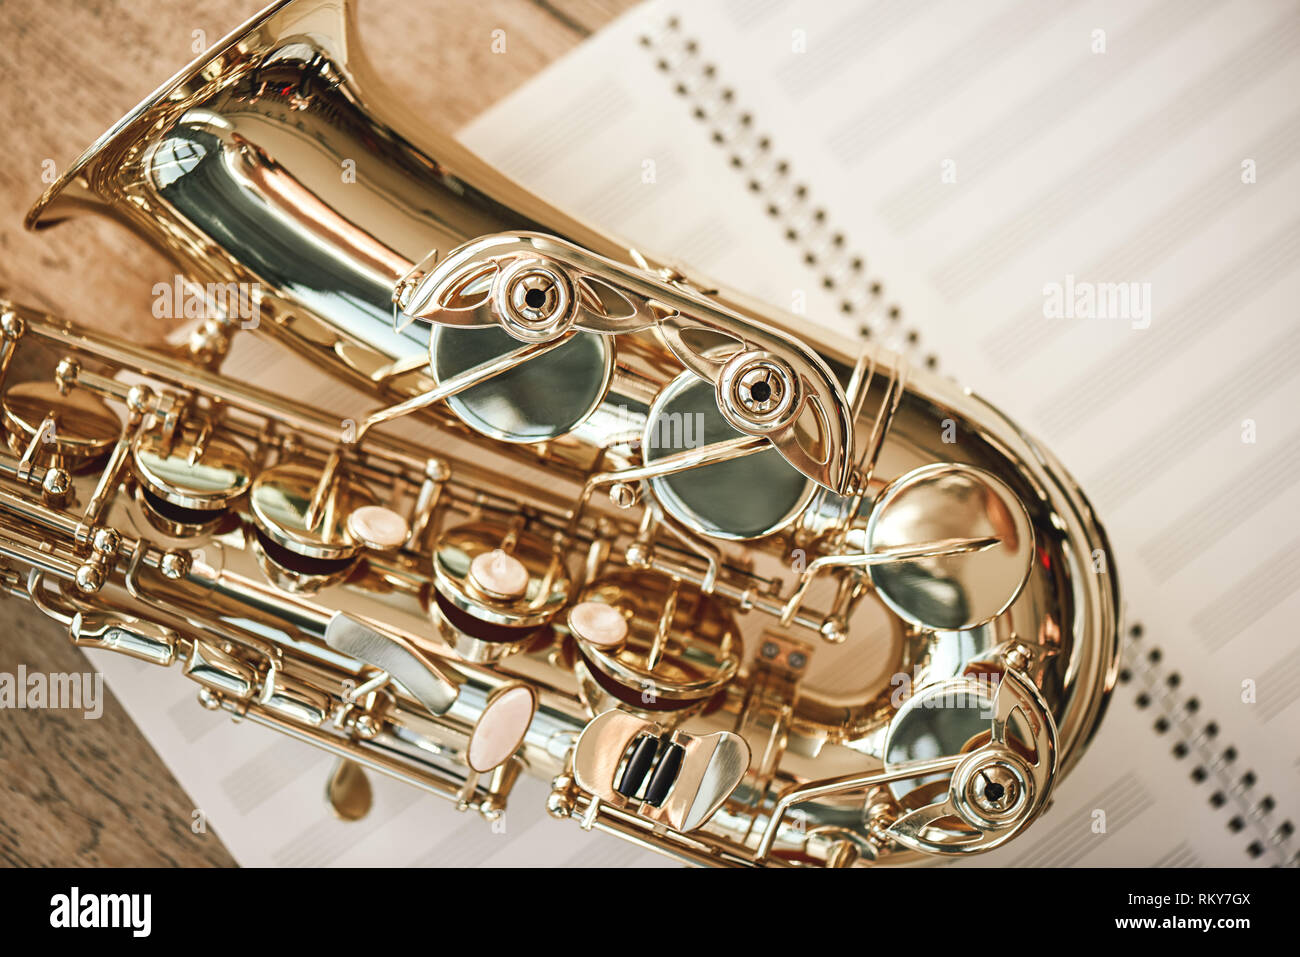 La joie de sax. Vue de dessus du saxophone belle couchée sur feuilles pour les notes de musique sur un plancher en bois. Instruments de musique. Des appareils de musique. Banque D'Images